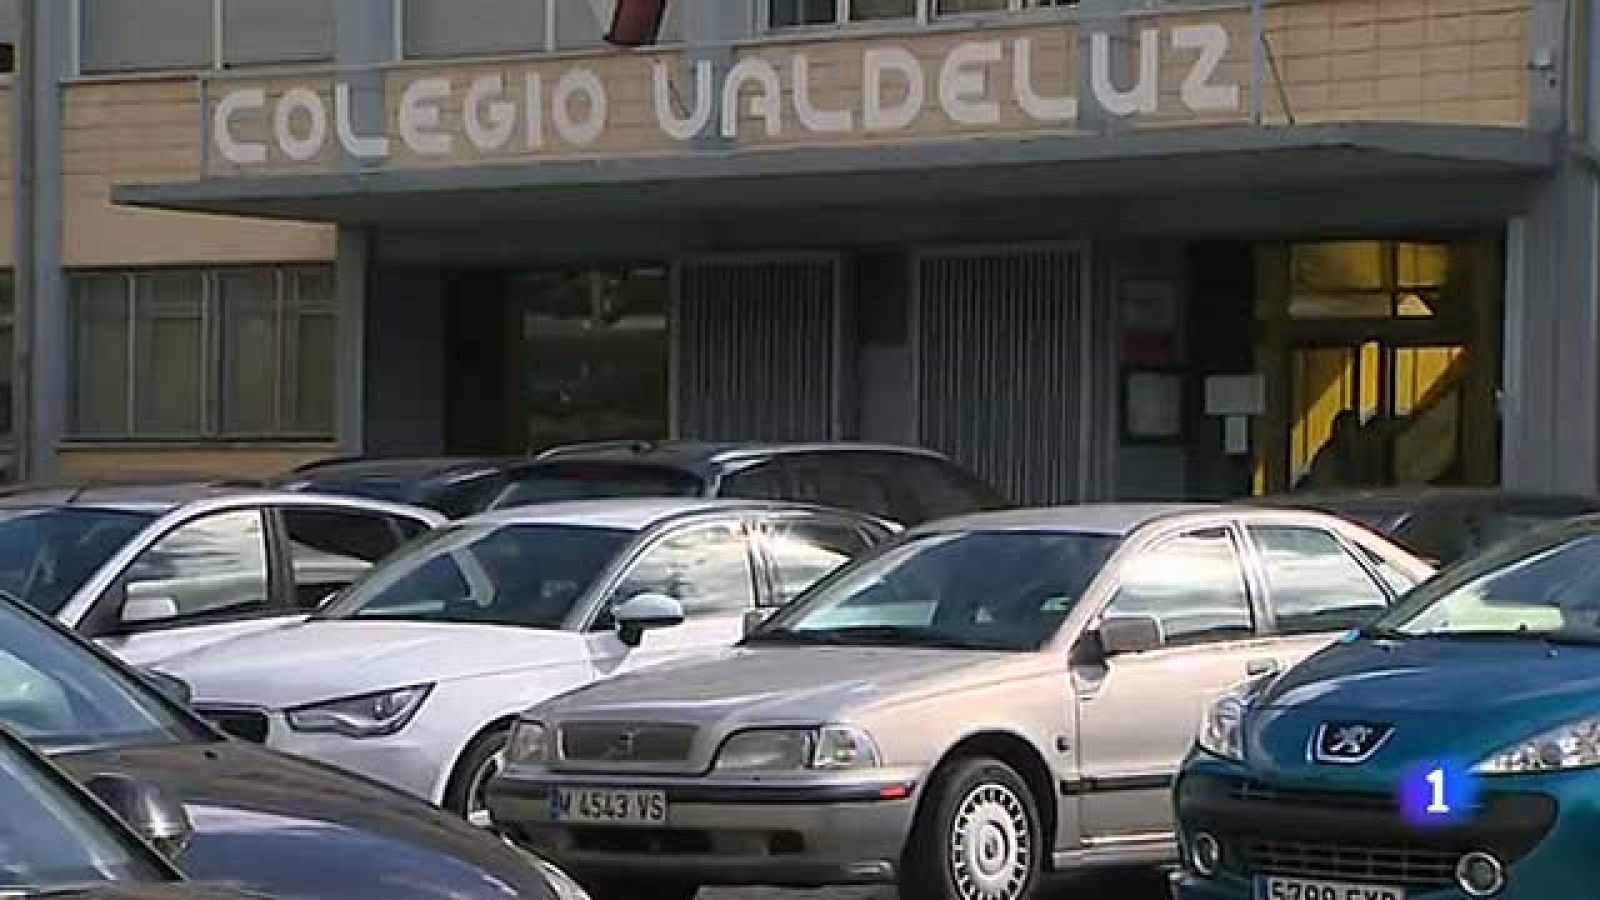 Telediario 1: Tres jóvenes confirman al juez que sufrieron abusos en el colegio Valdeluz | RTVE Play